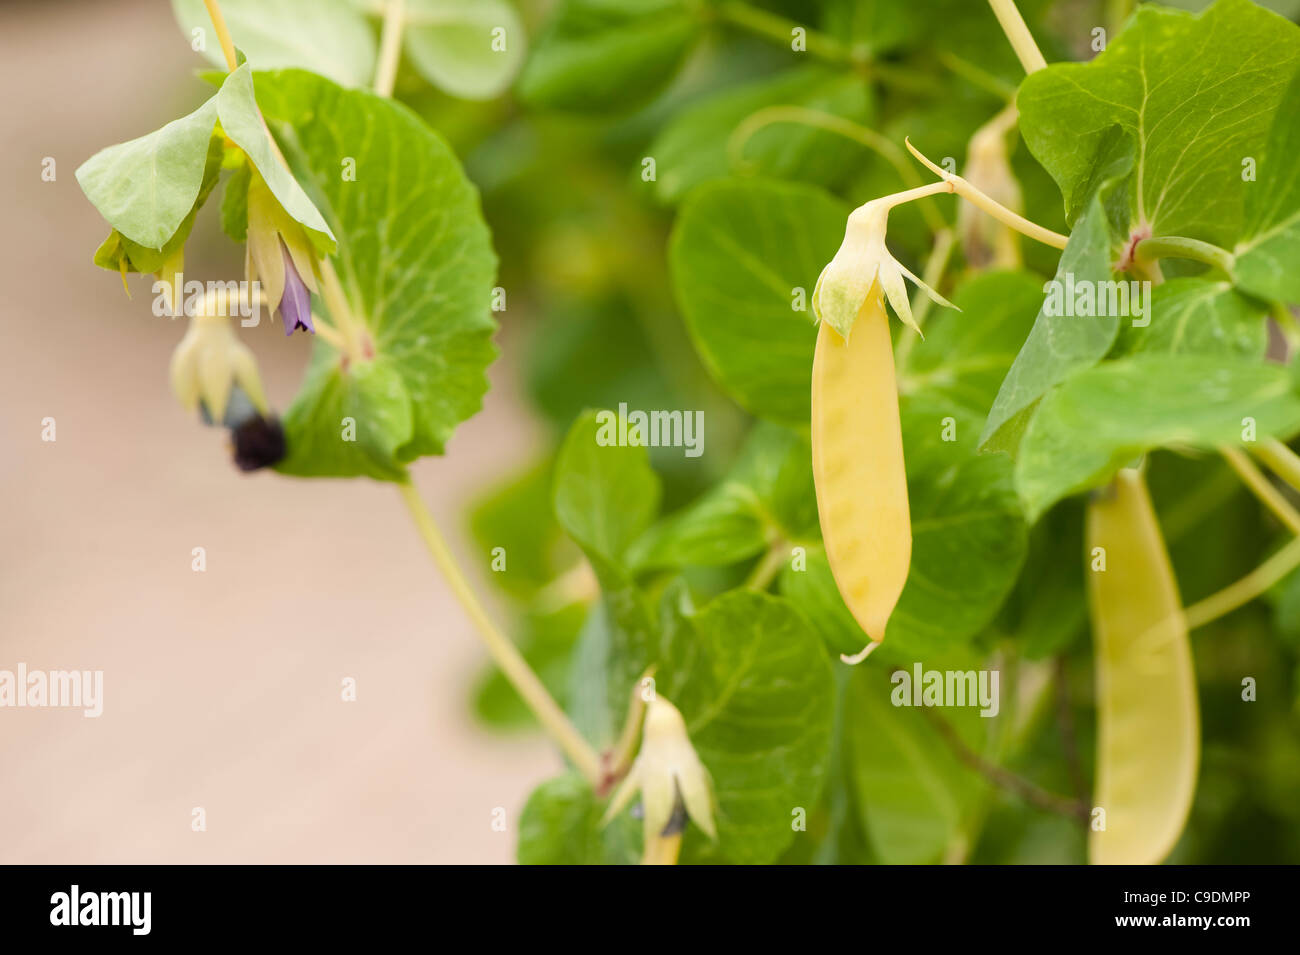 Pisum sativum 'Golden Sweet', Mangetout Stock Photo